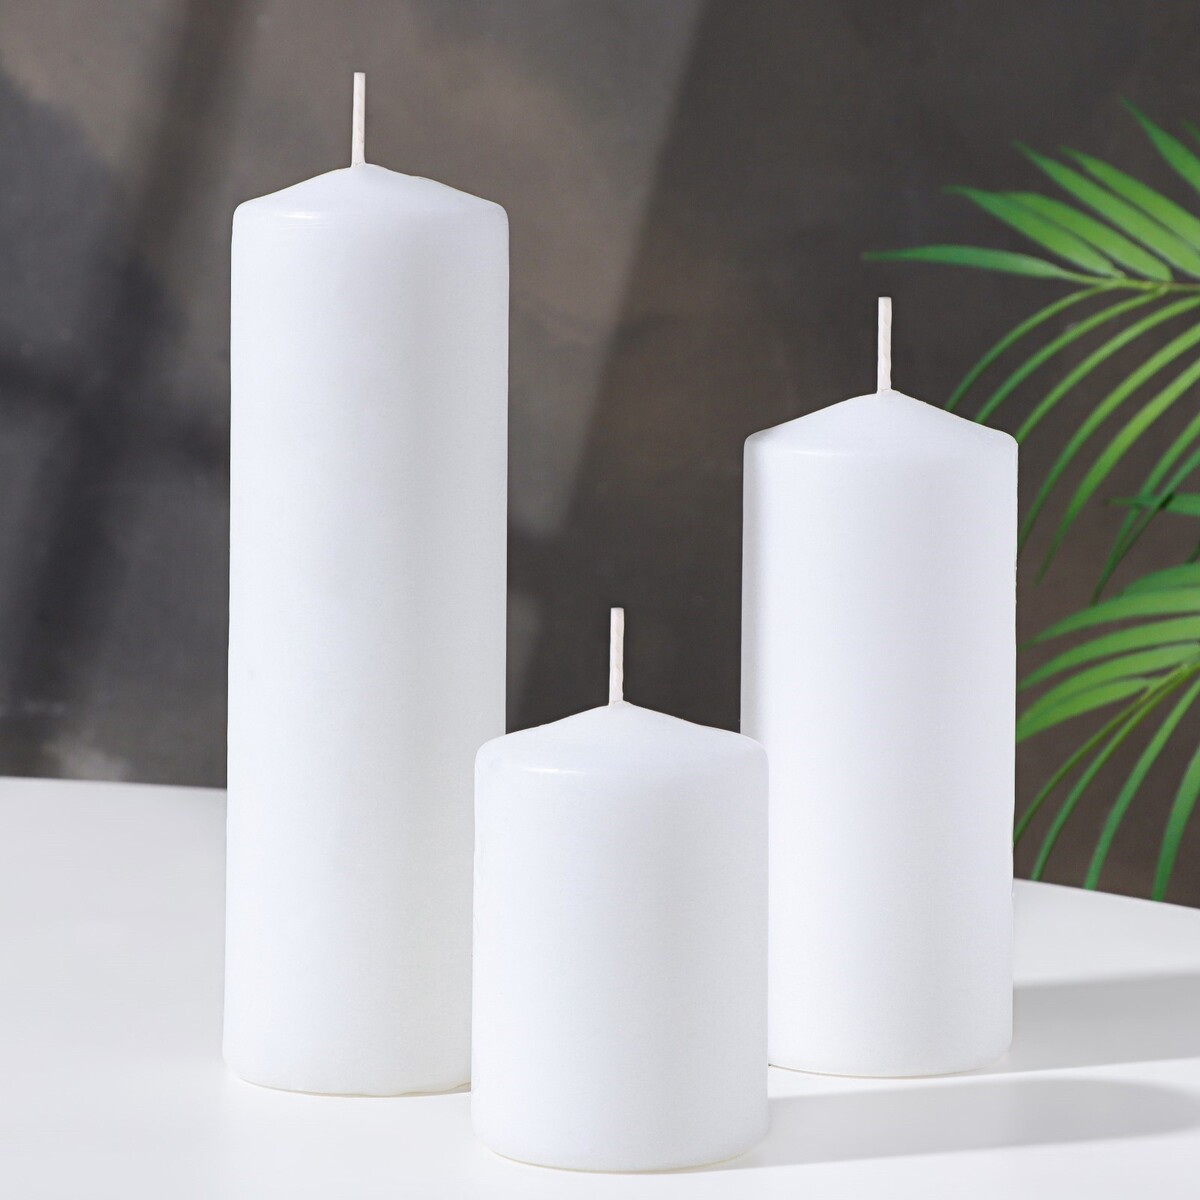 Набор свечей - цилиндров 3в1 (6х14 см, 6х19 см, 6х8,5 см), белый набор свечей цилиндров 3в1 6х14 см 6х19 см 6х8 5 см белый